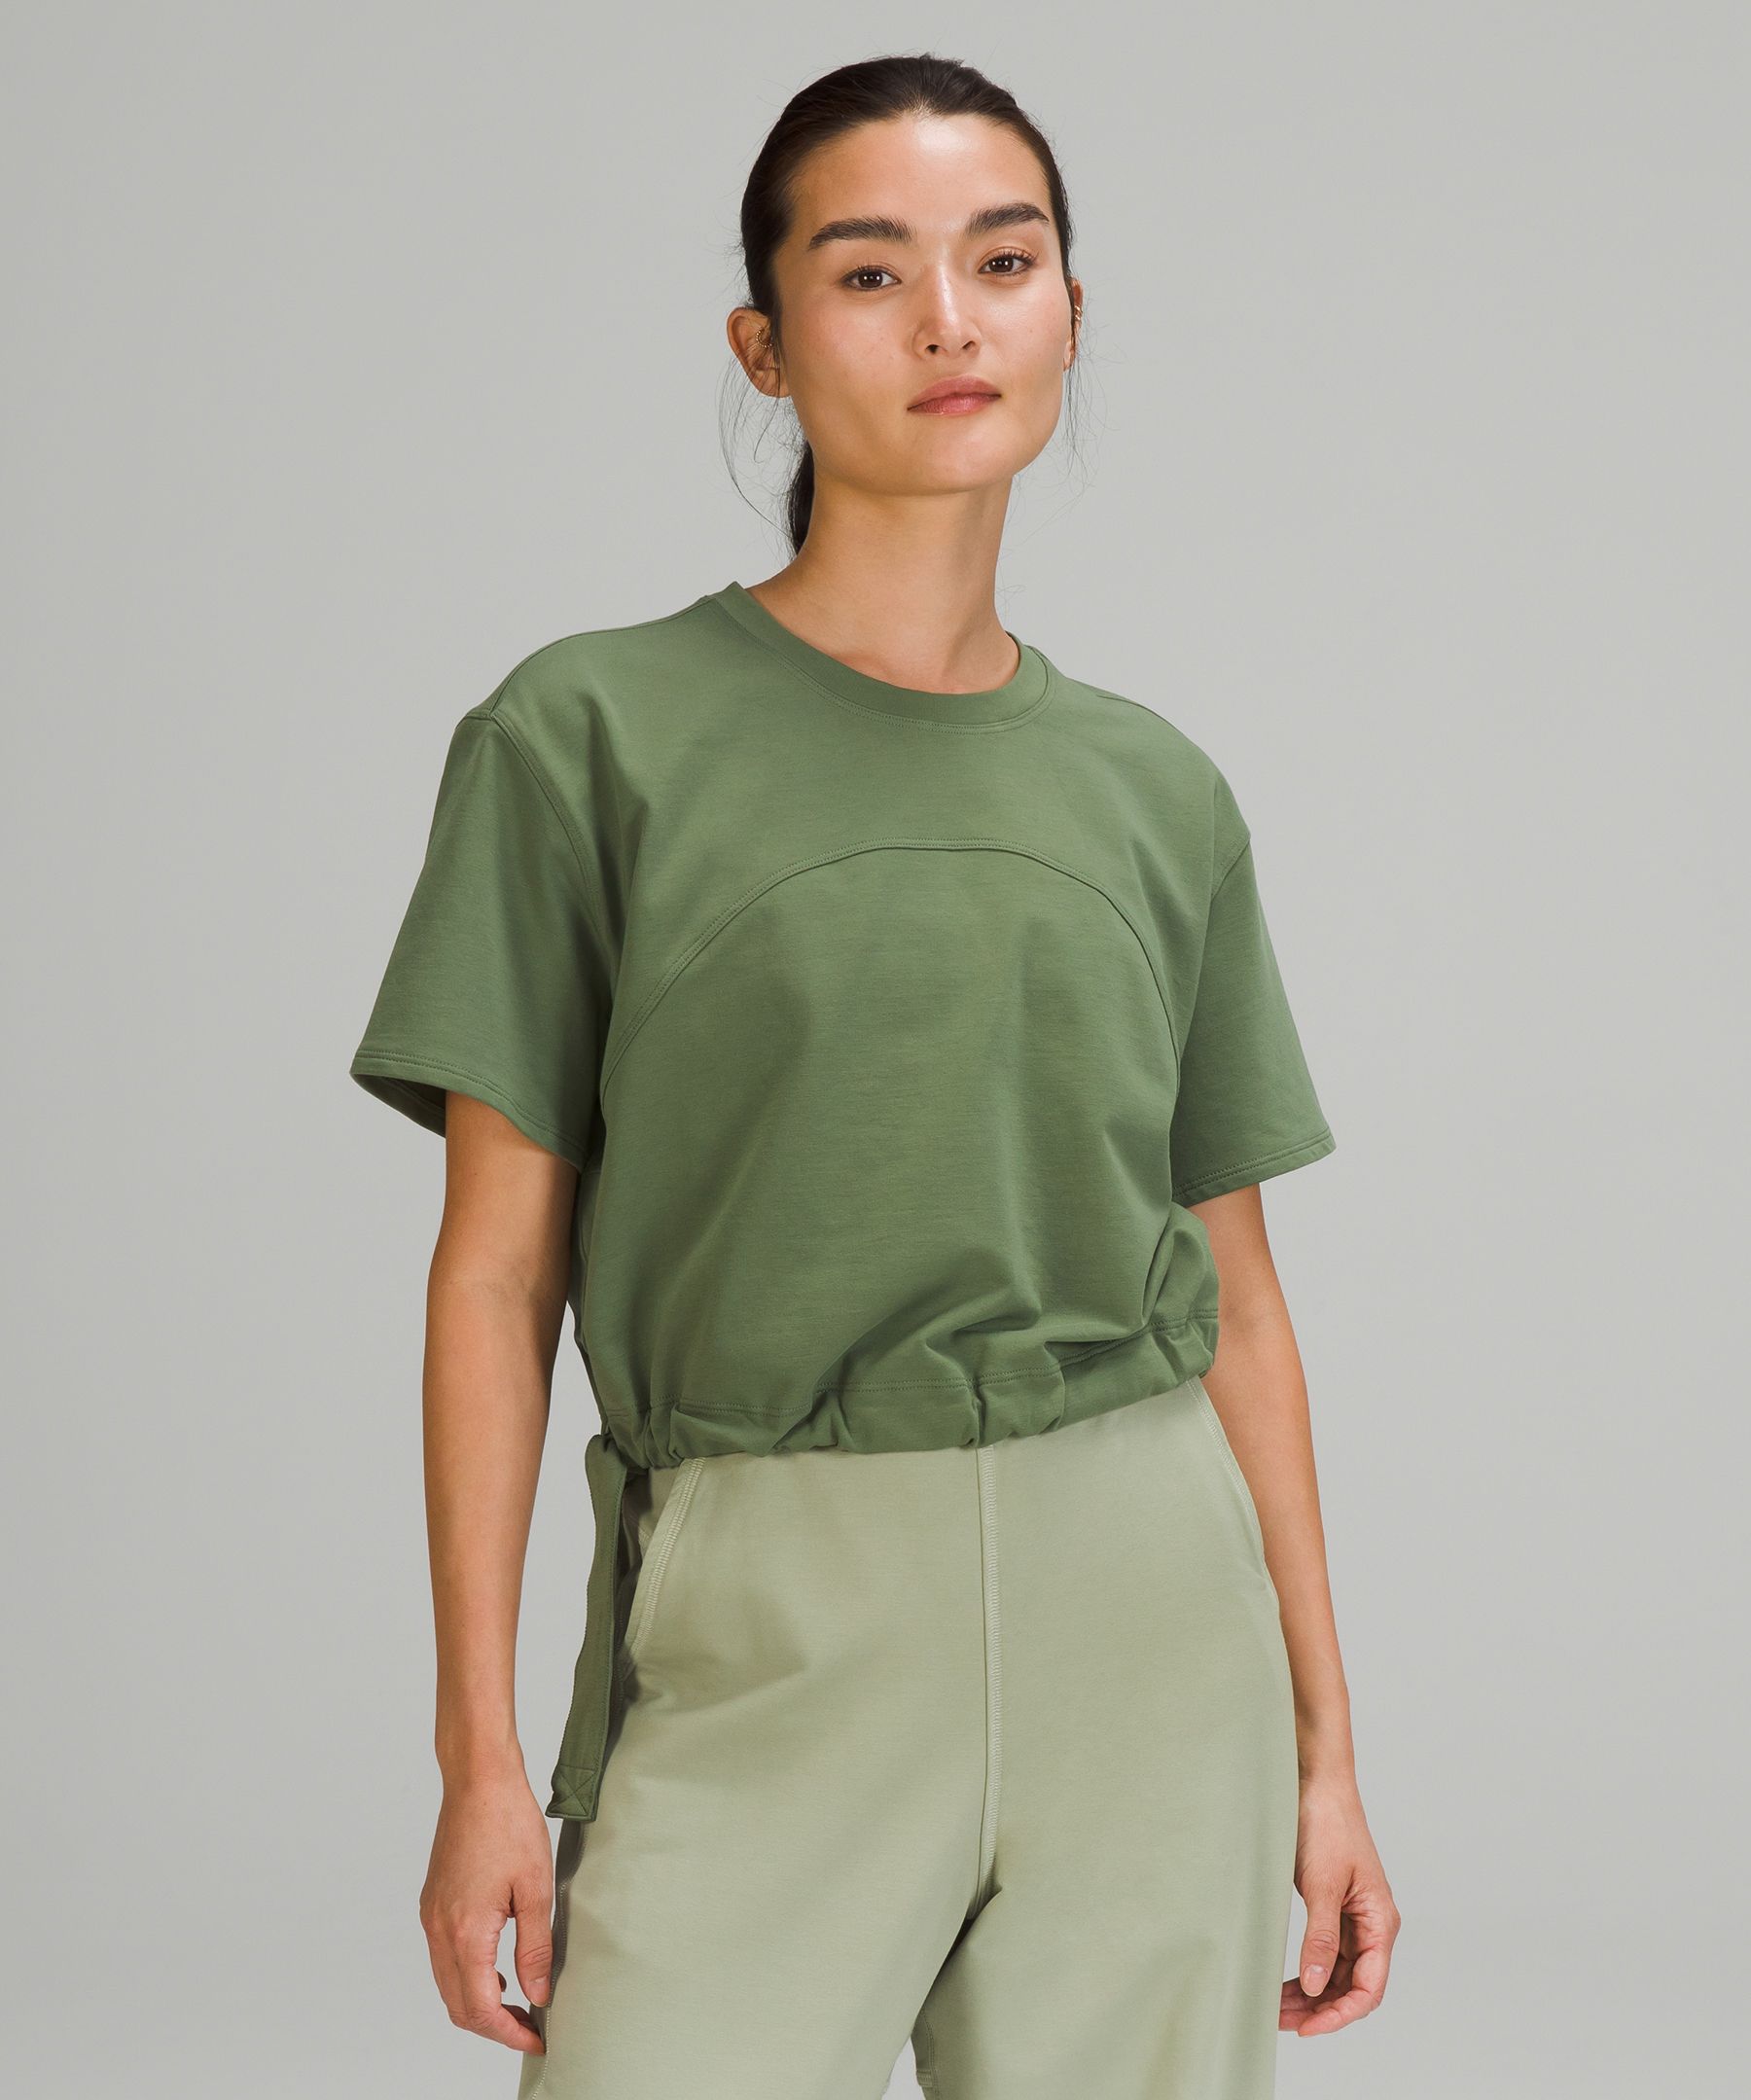 Lululemon La Side Cinch T-shirt In Green Twill